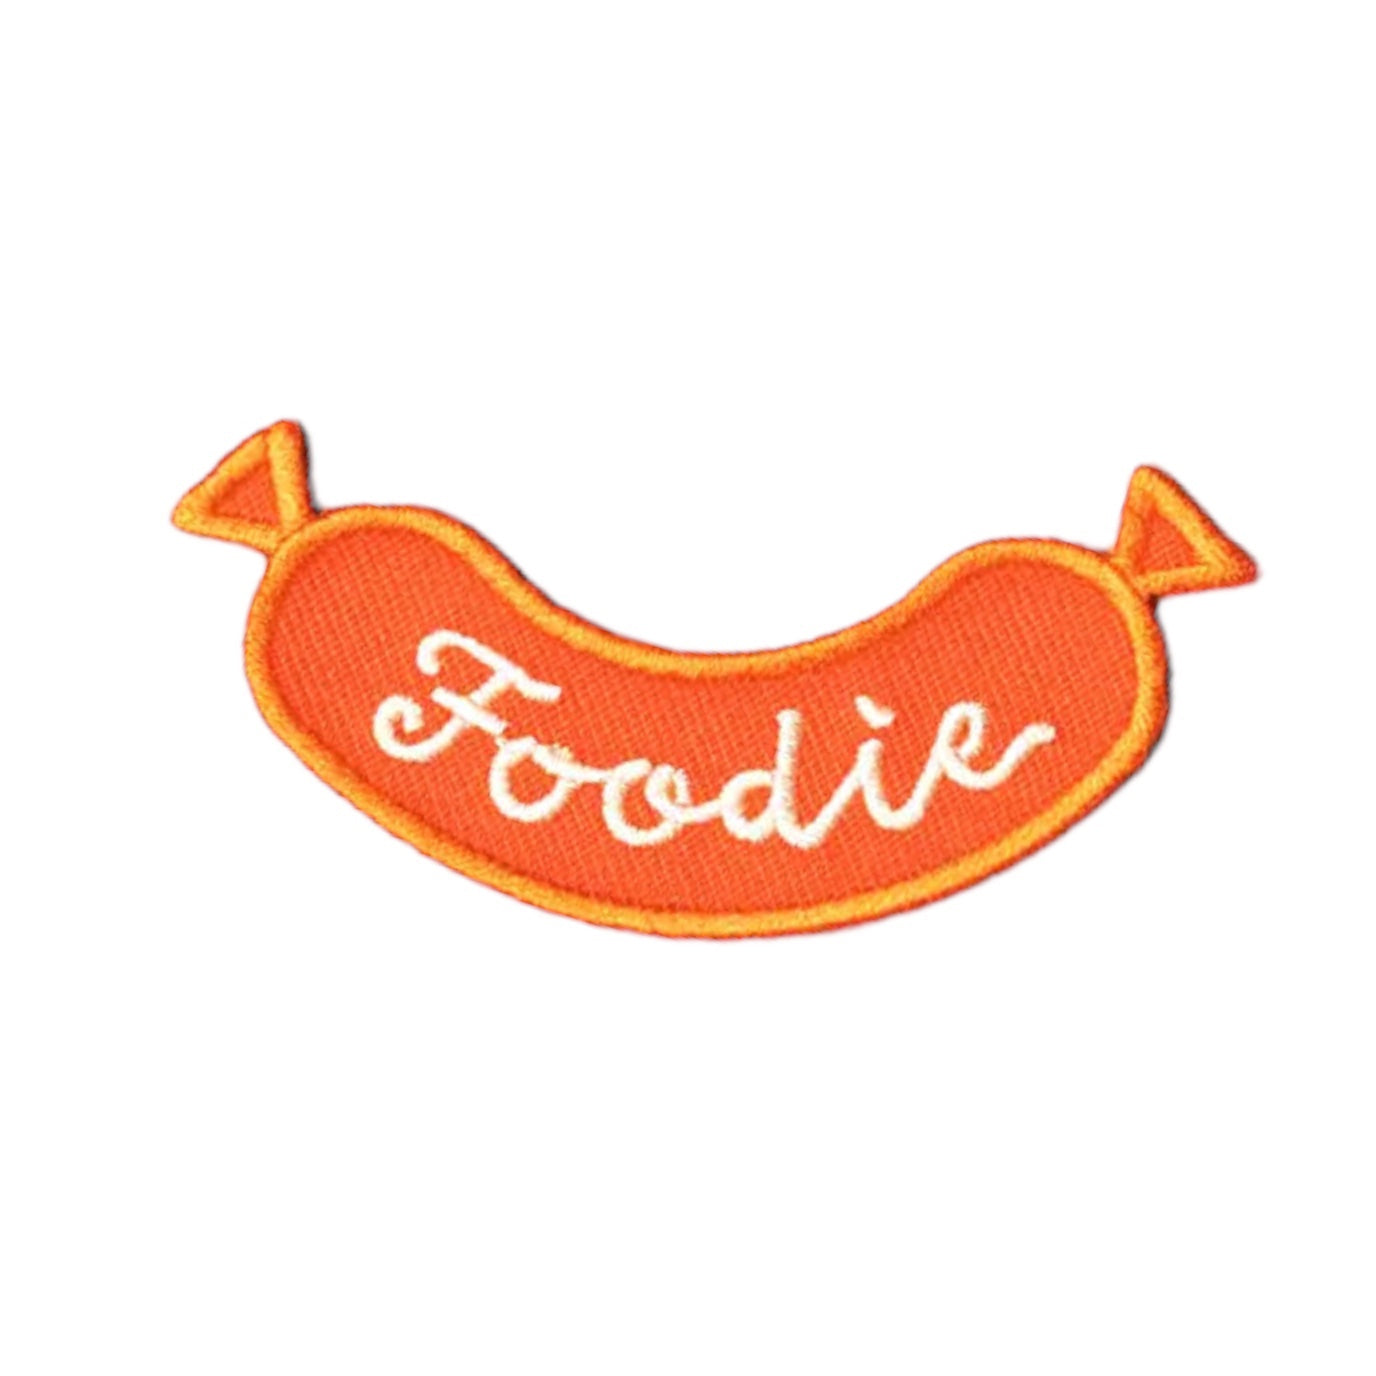 Foodie Badge